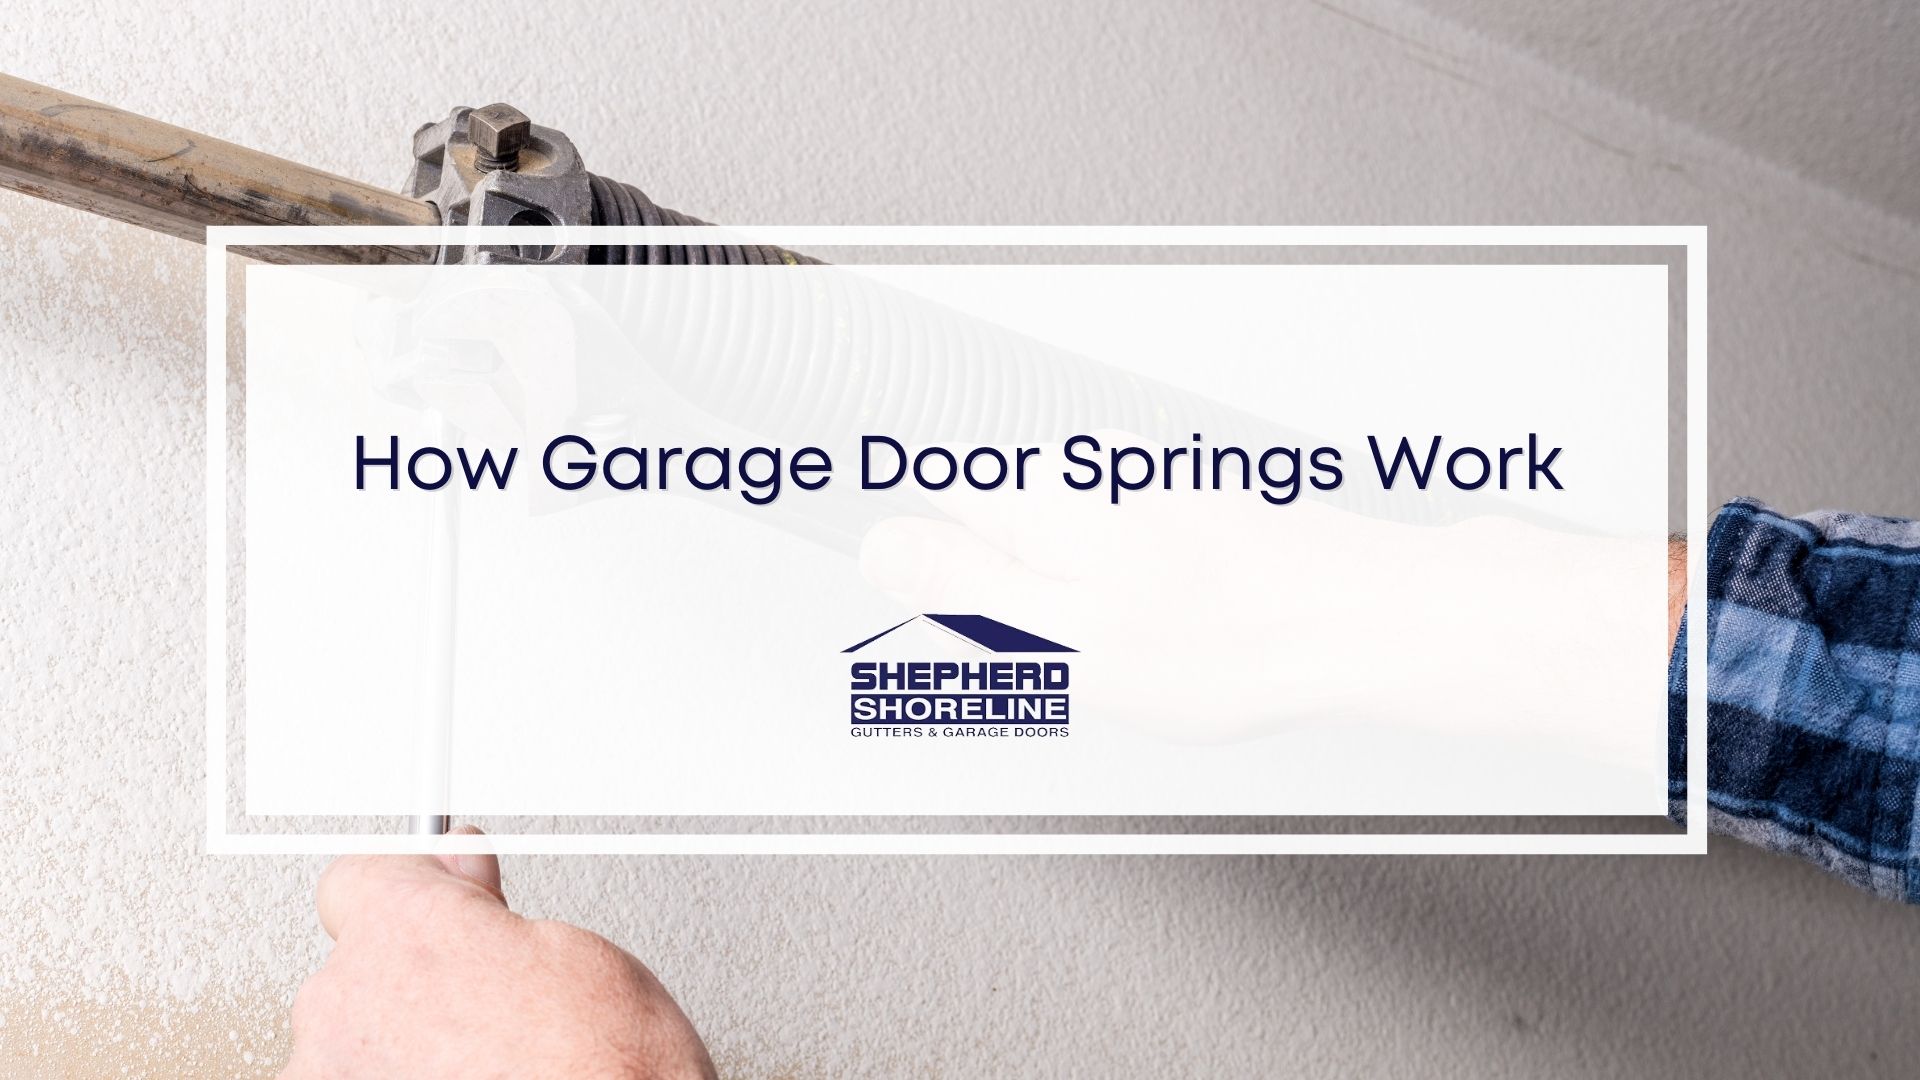 Featured image of how garage door springs work